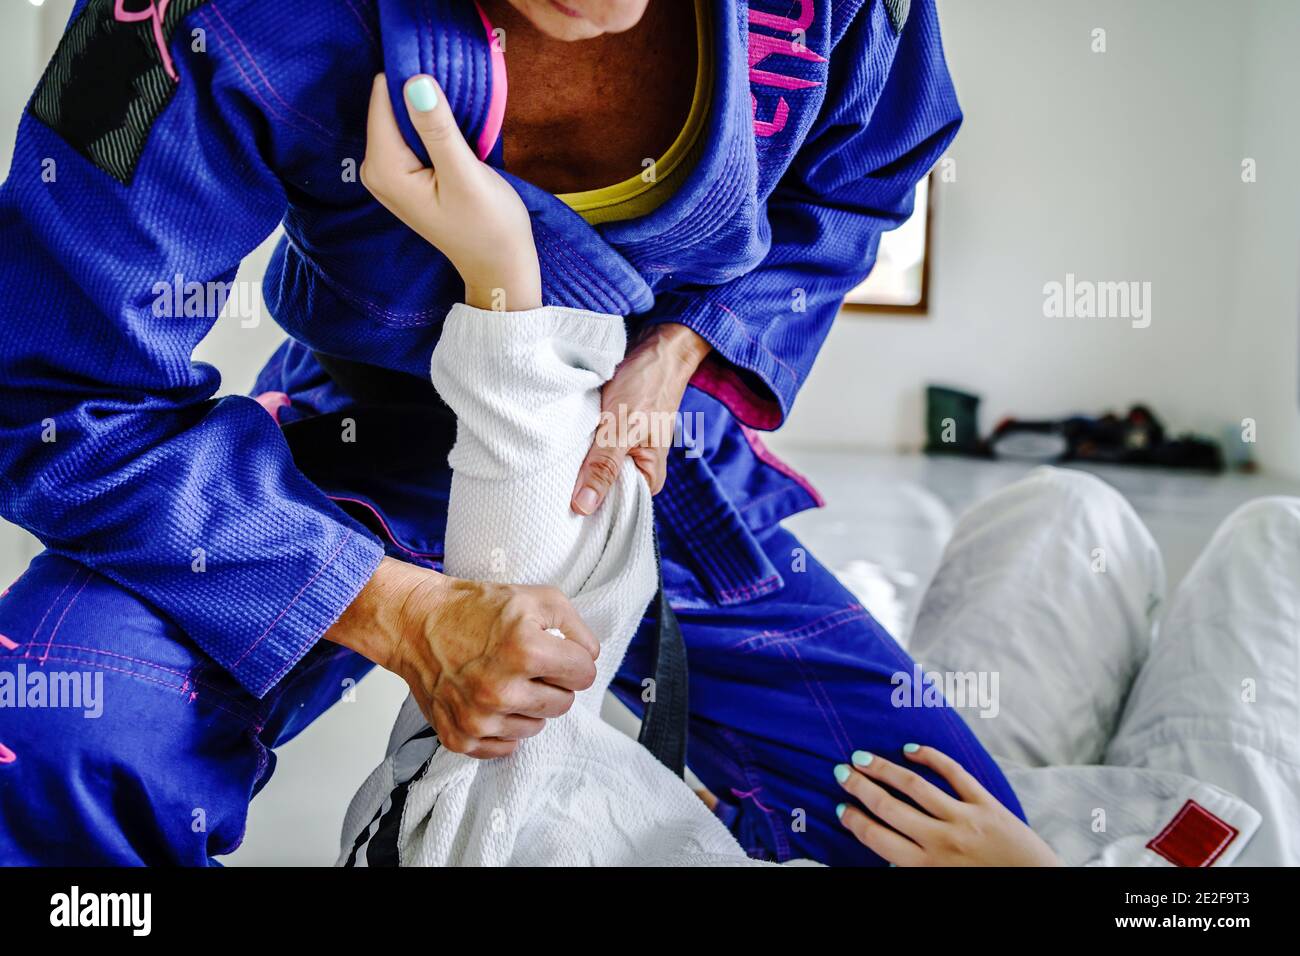 Griffe von der Wache in brasilianischen Jiu jitsu bjj oder judo Training Sparring zwei weibliche Athleten Kämpfer Bohrtechniken Für den Wettbewerb A Stockfoto